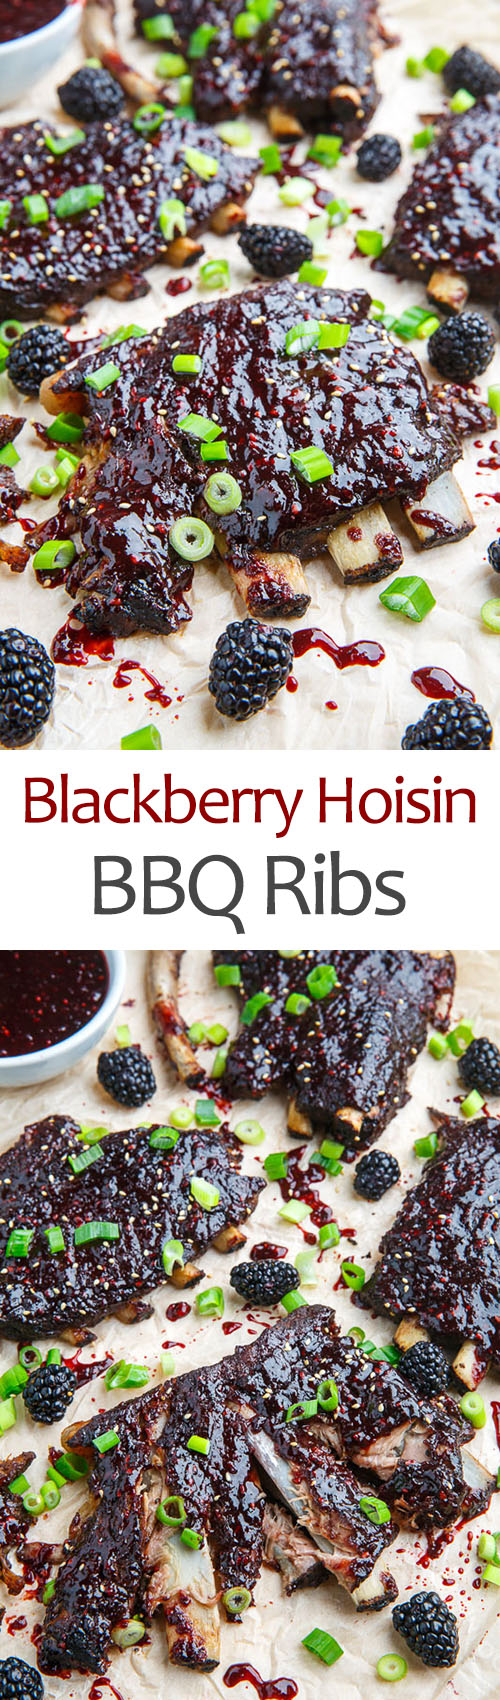 Blackberry Hoisin BBQ Ribs